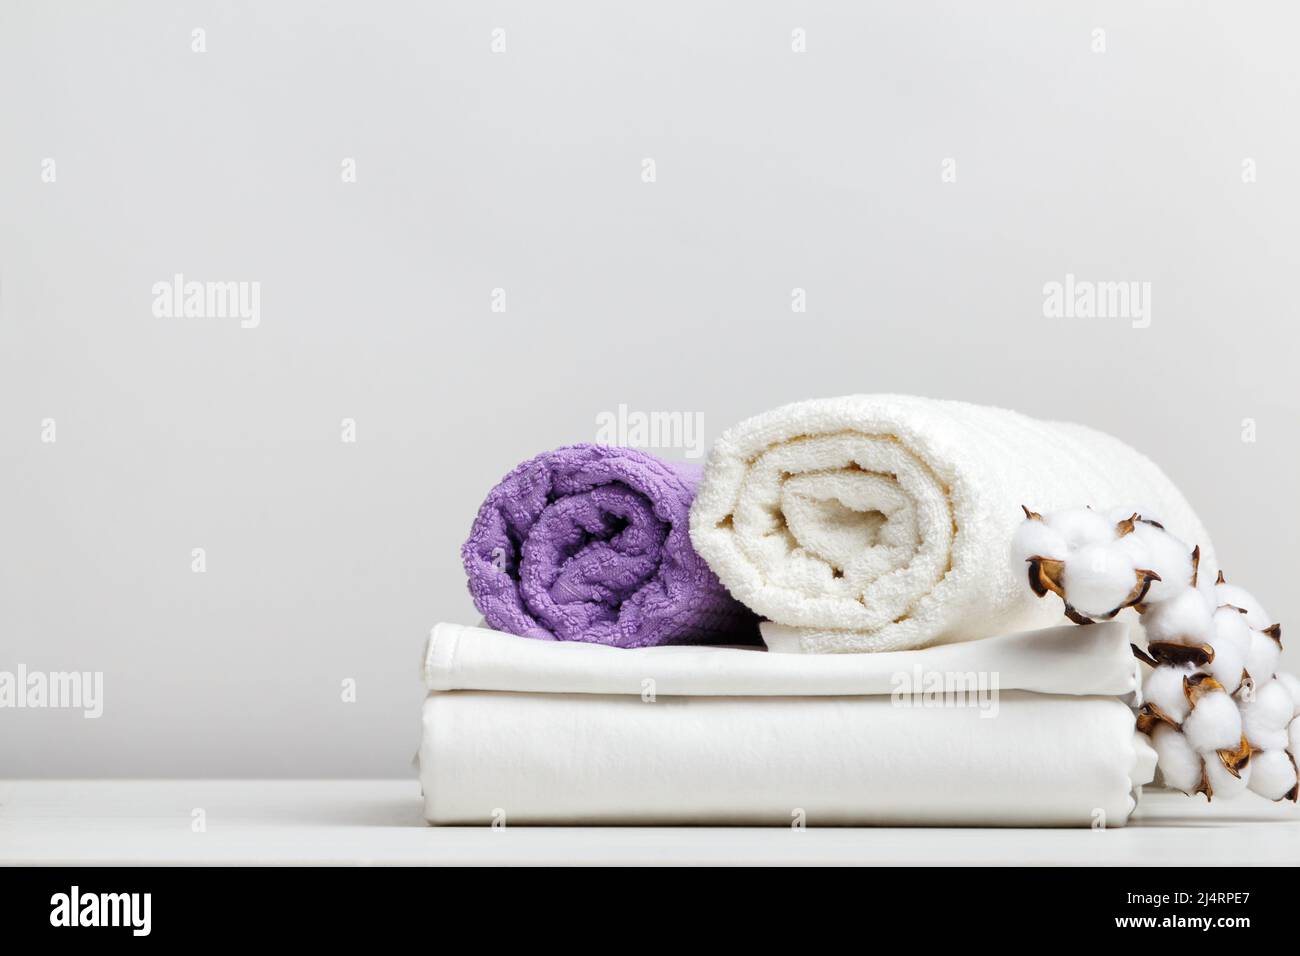 Biancheria da letto bianca, lenzuola e asciugamani in spugna con ramo di cotone su un tavolo grigio chiaro Foto Stock